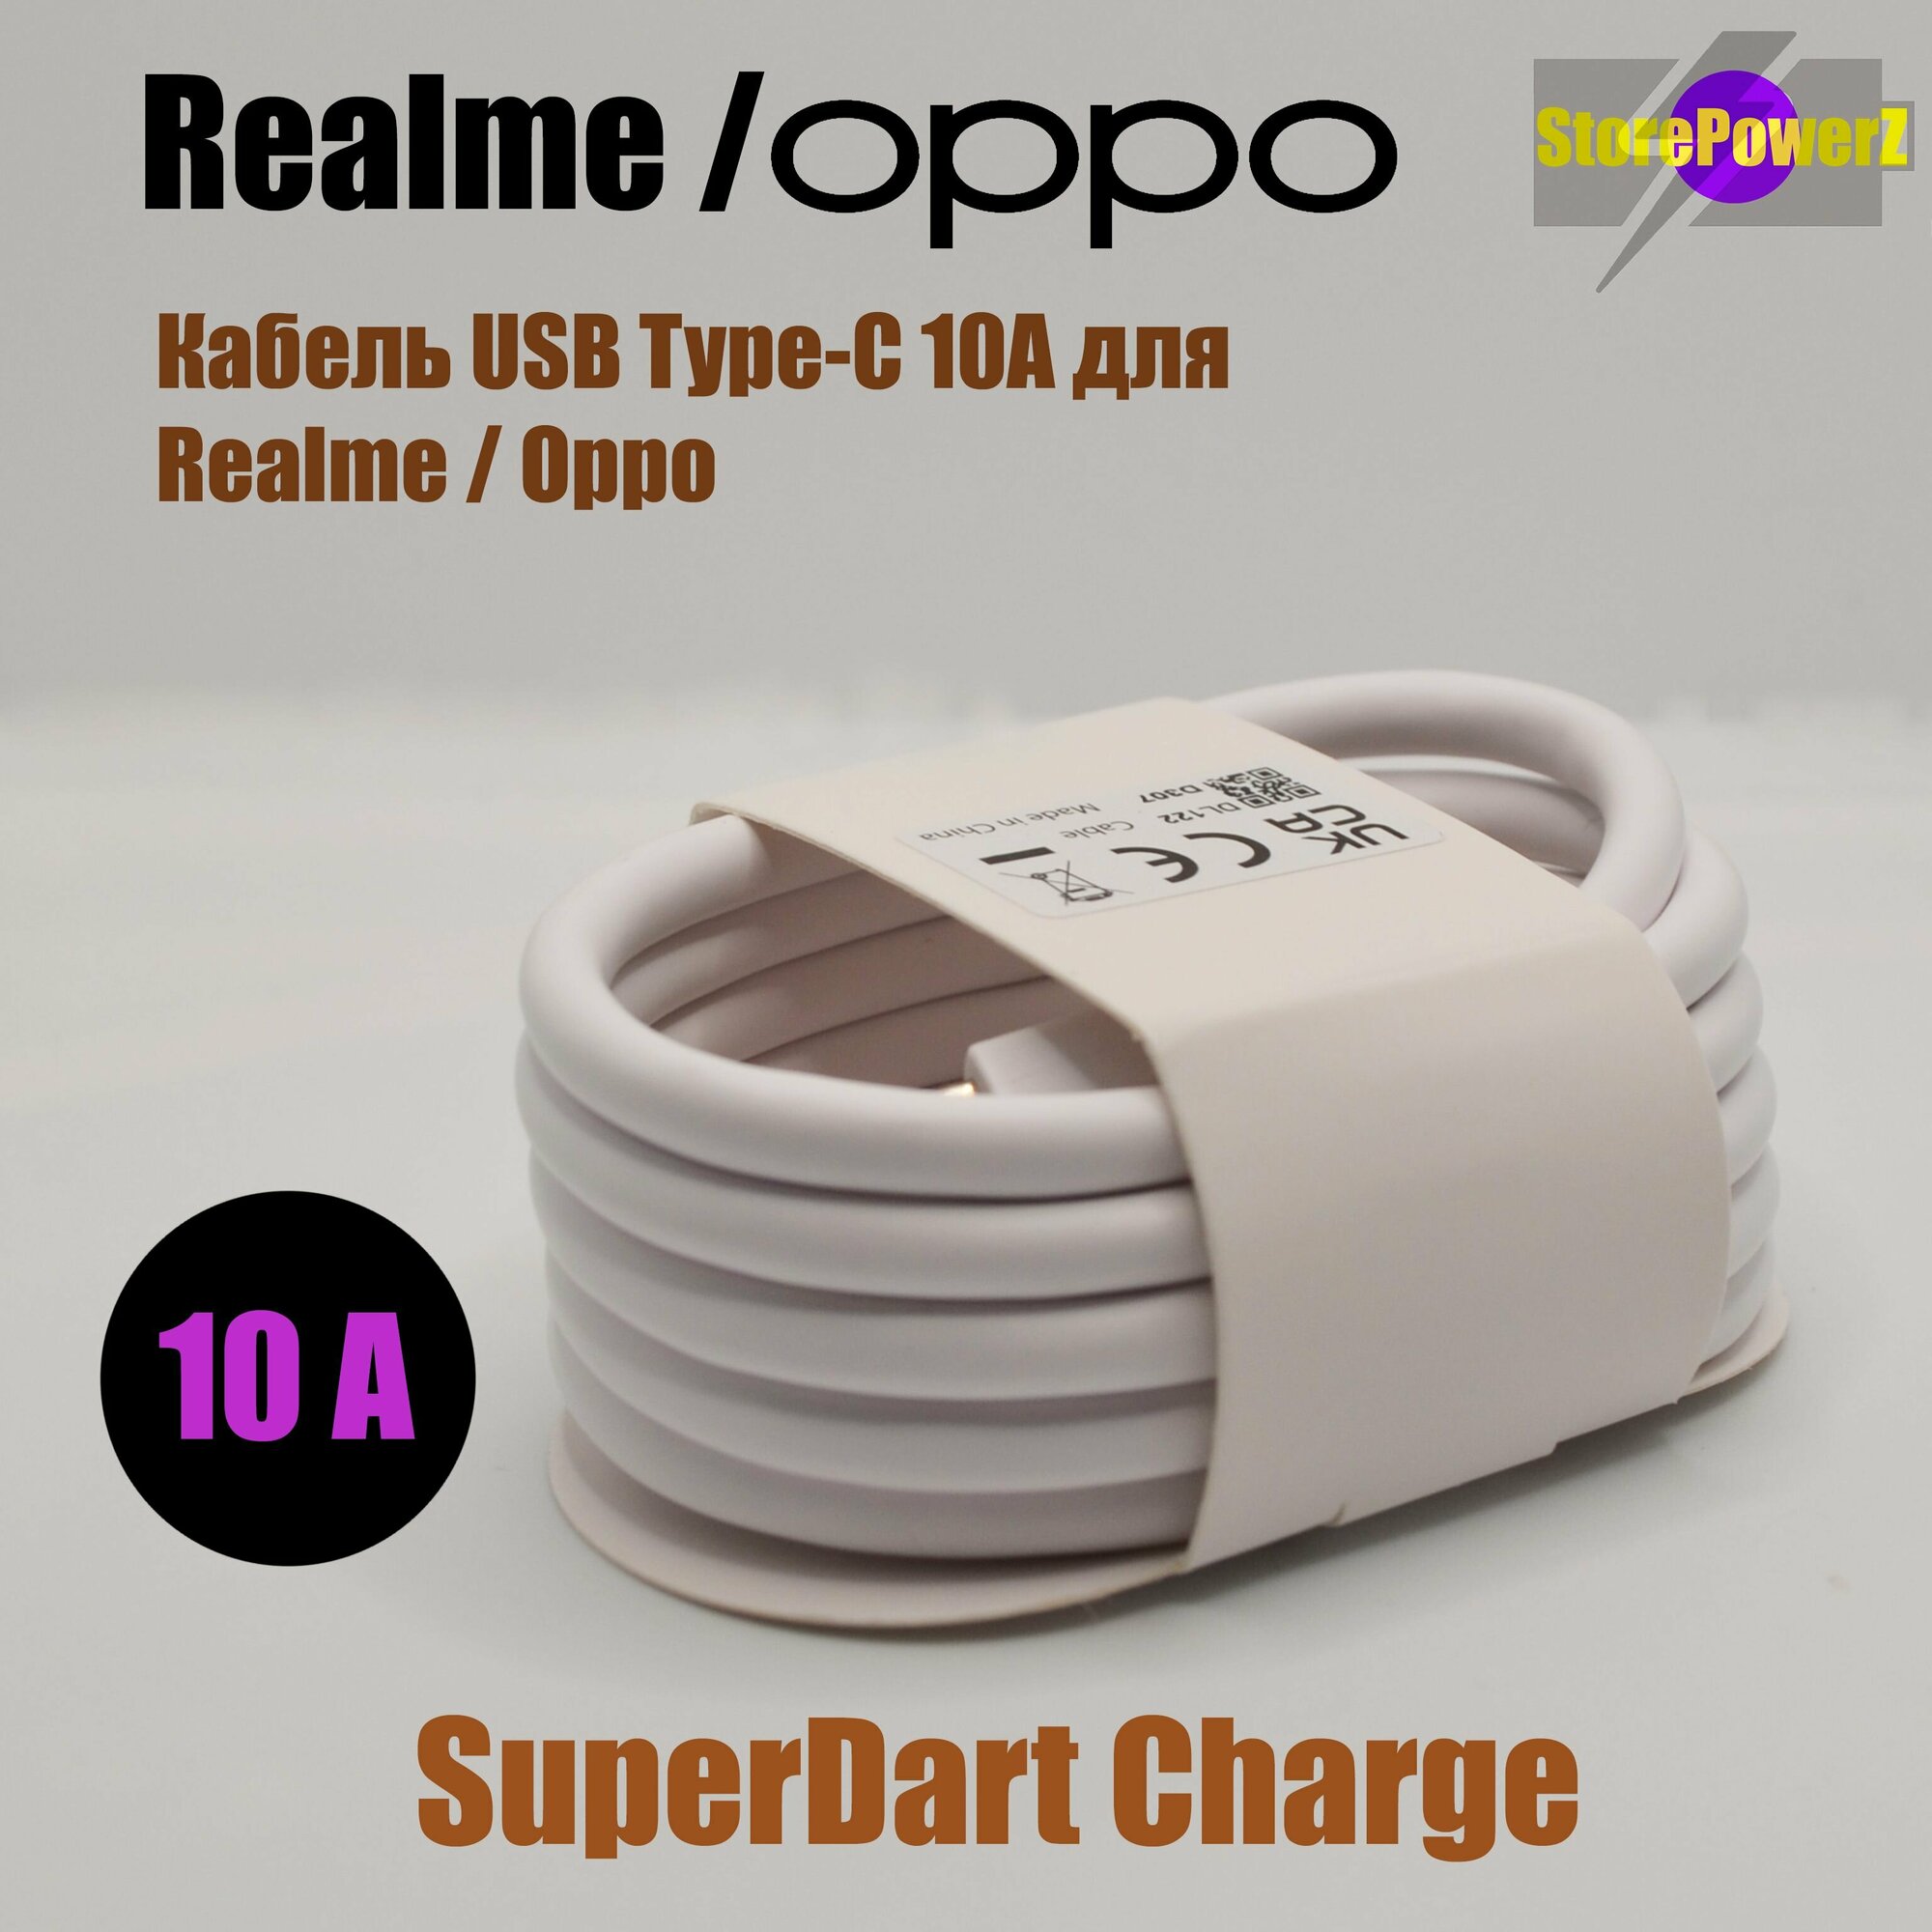 Кабель зарядки USB Type-C 10A для Realme / Oppo (SuperDart Charge) цвет: White